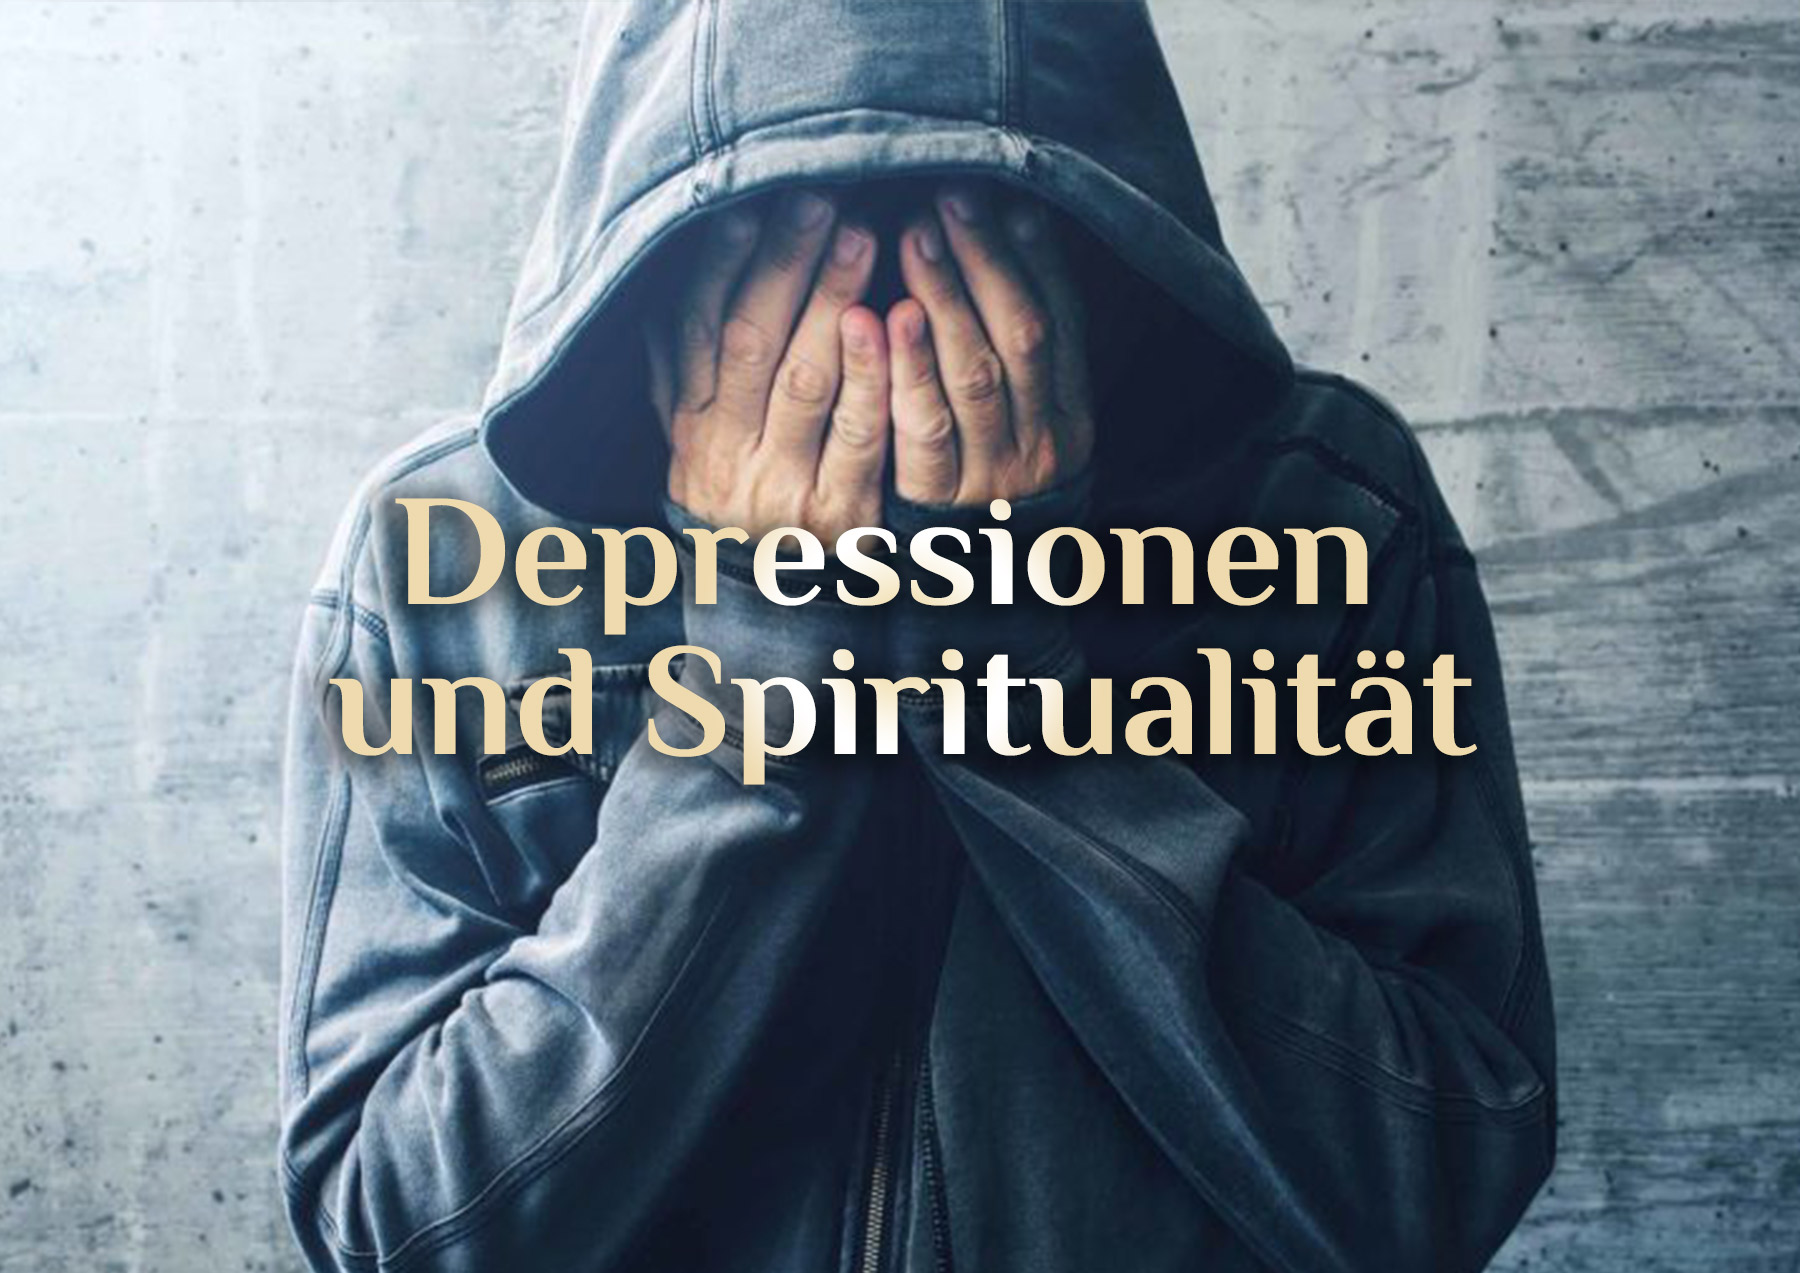 Depressionen 😓 spirituelle Heilung möglich? 😓 Depressionen elementar erkennen